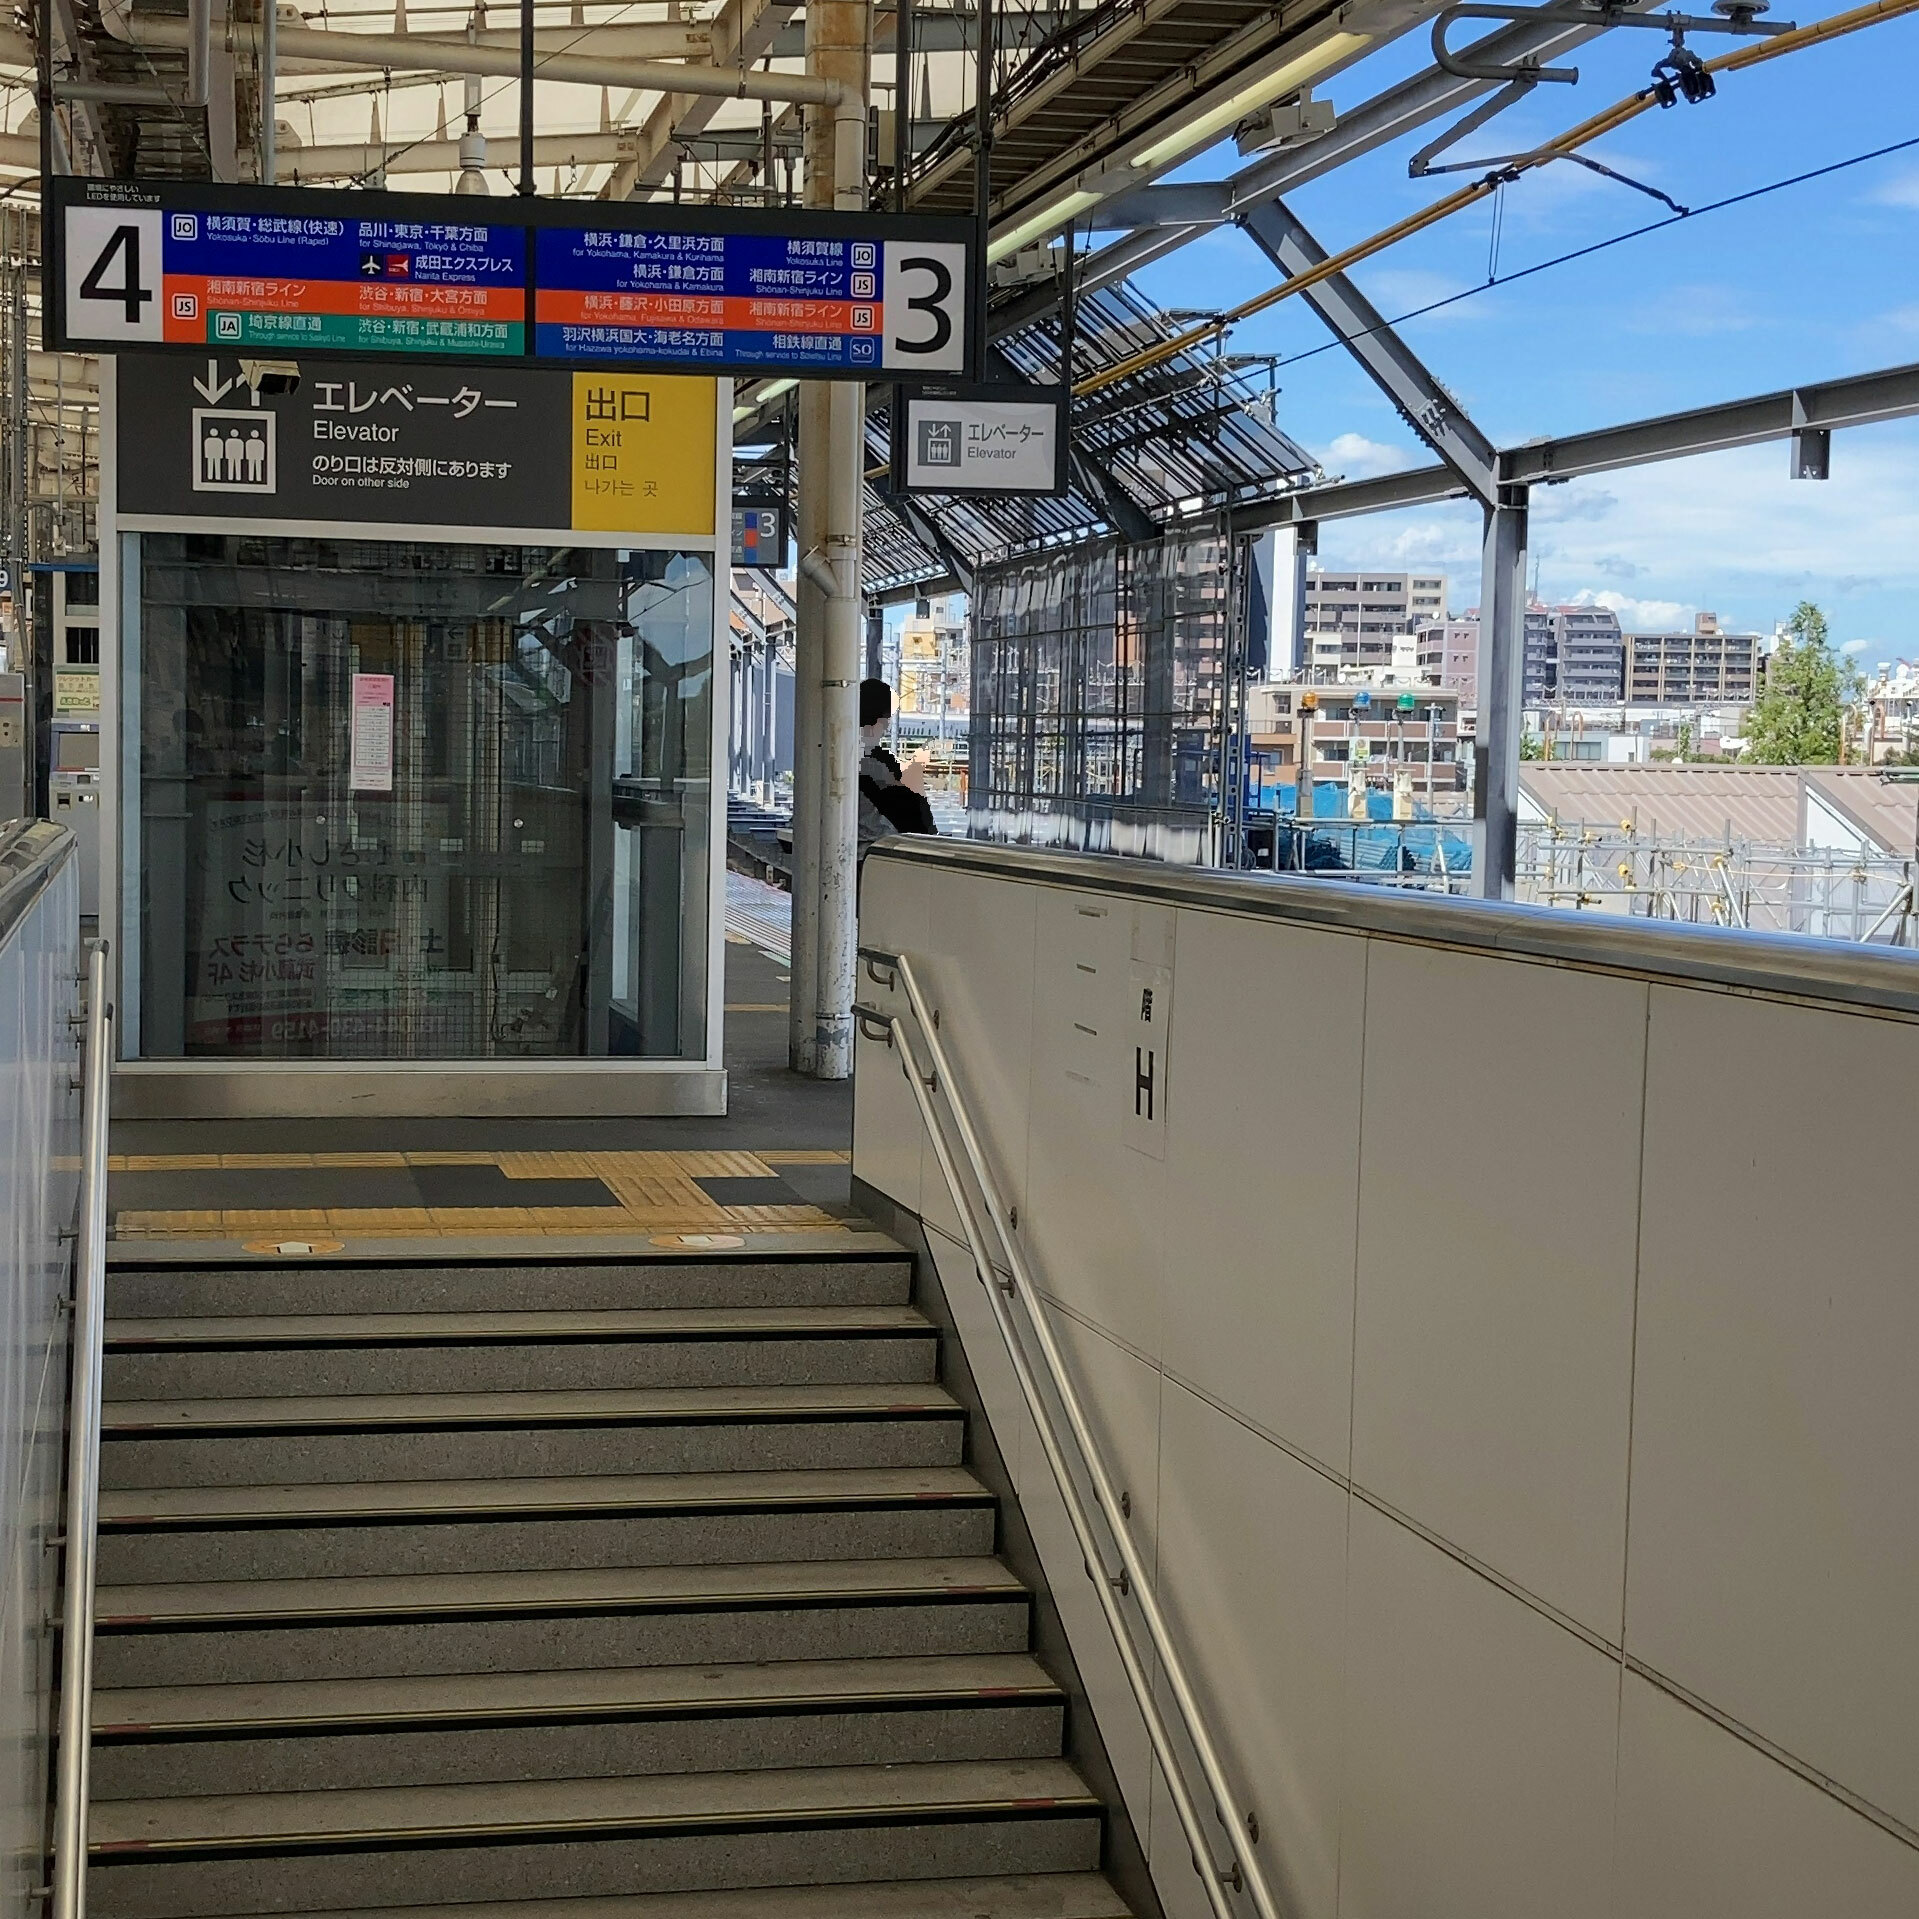 JR/武蔵小杉駅に相鉄線が到着です